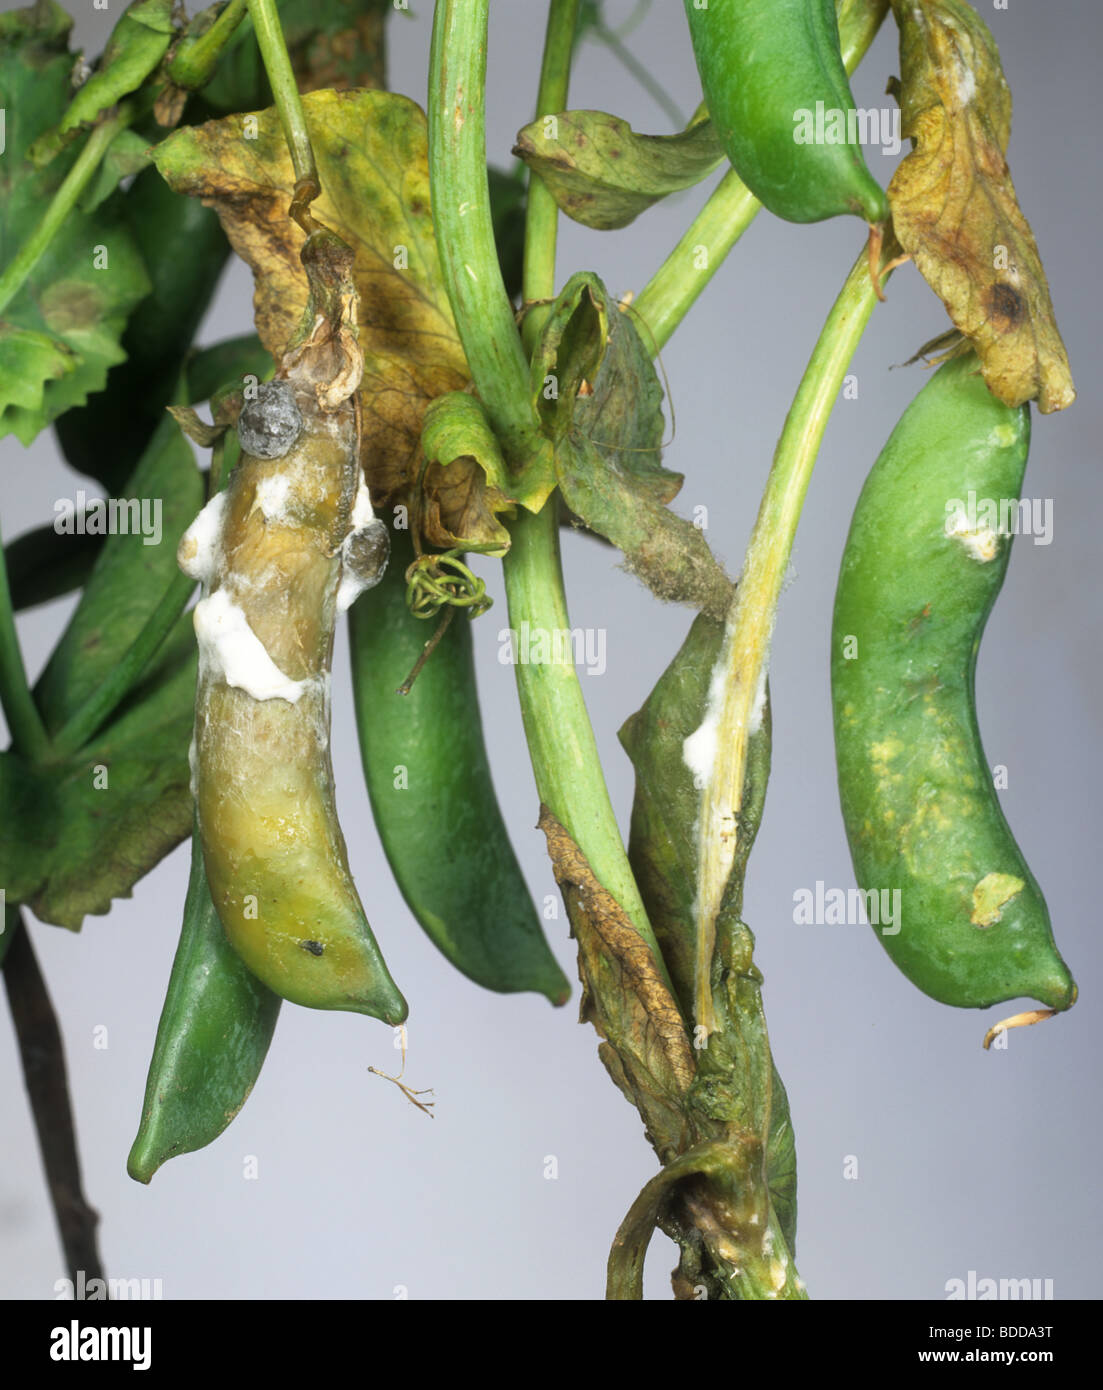 Stem & pod rot (Sclerotinia sclerotiorum) disease symptoms on a pea pod  Stock Photo - Alamy